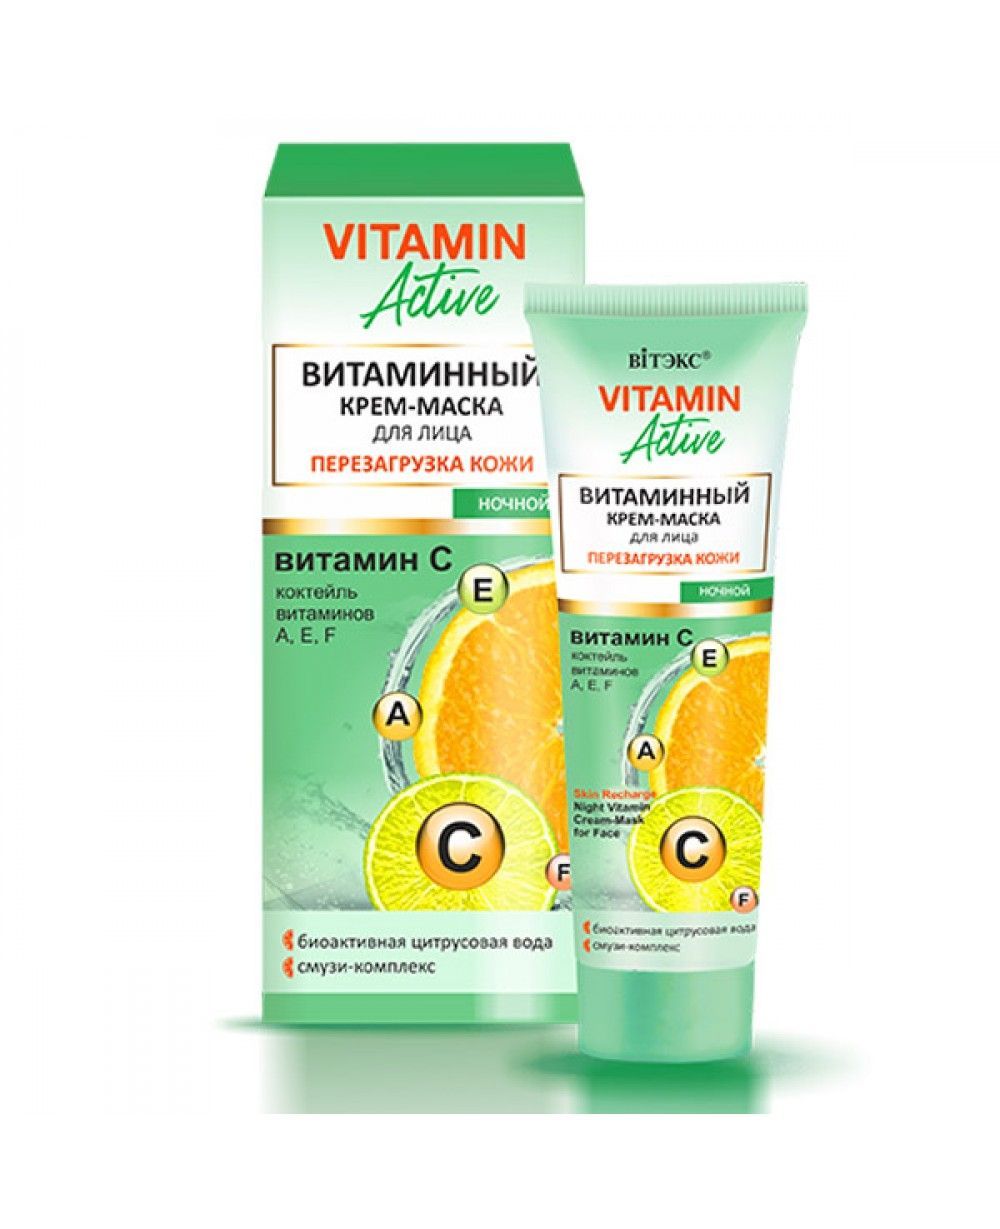 Vitamin Active КРЕМ-МАСКА Вітамінний для обличчя ПЕРЕЗАВАНТАЖЕННЯ ШКІРИ, нічний, 40 мл-ann_img